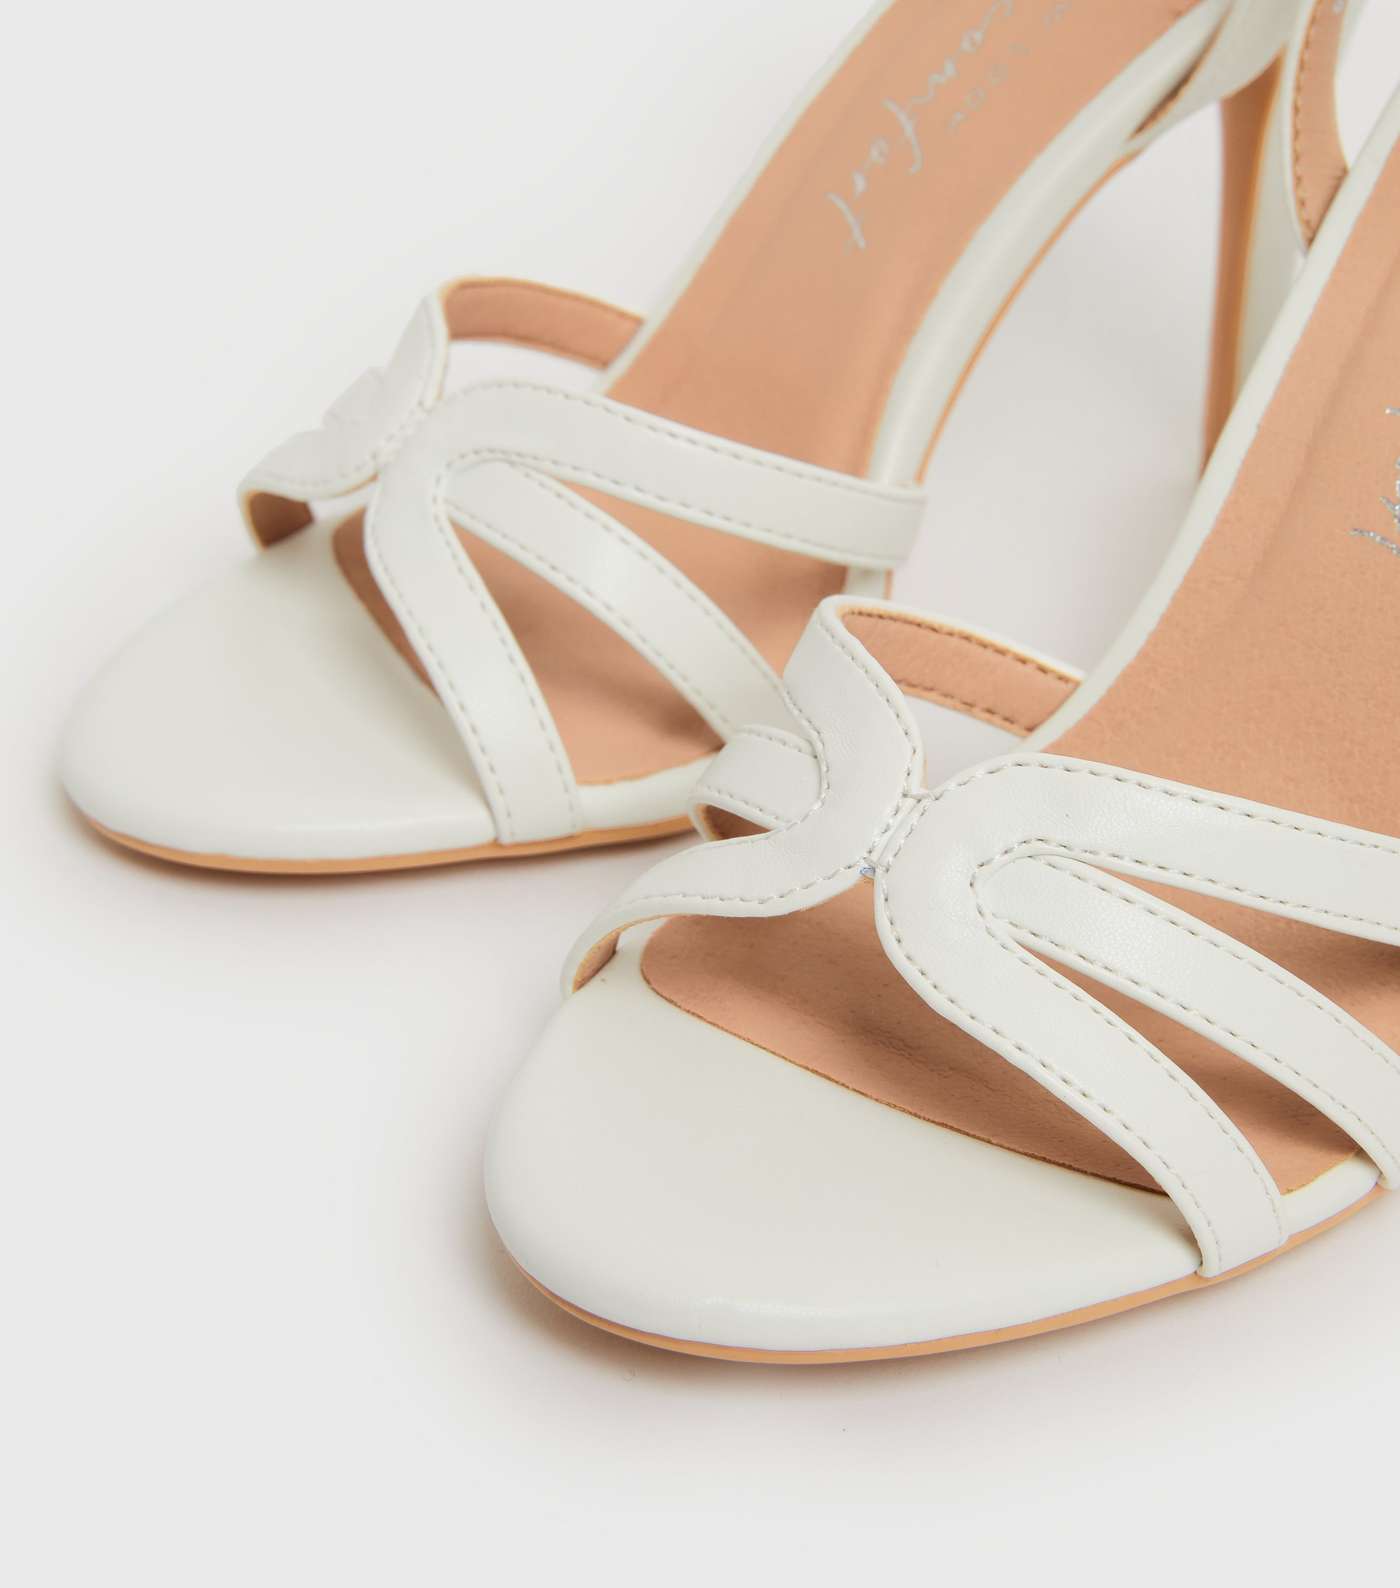 White Caged Stiletto Heel Sandals Image 4